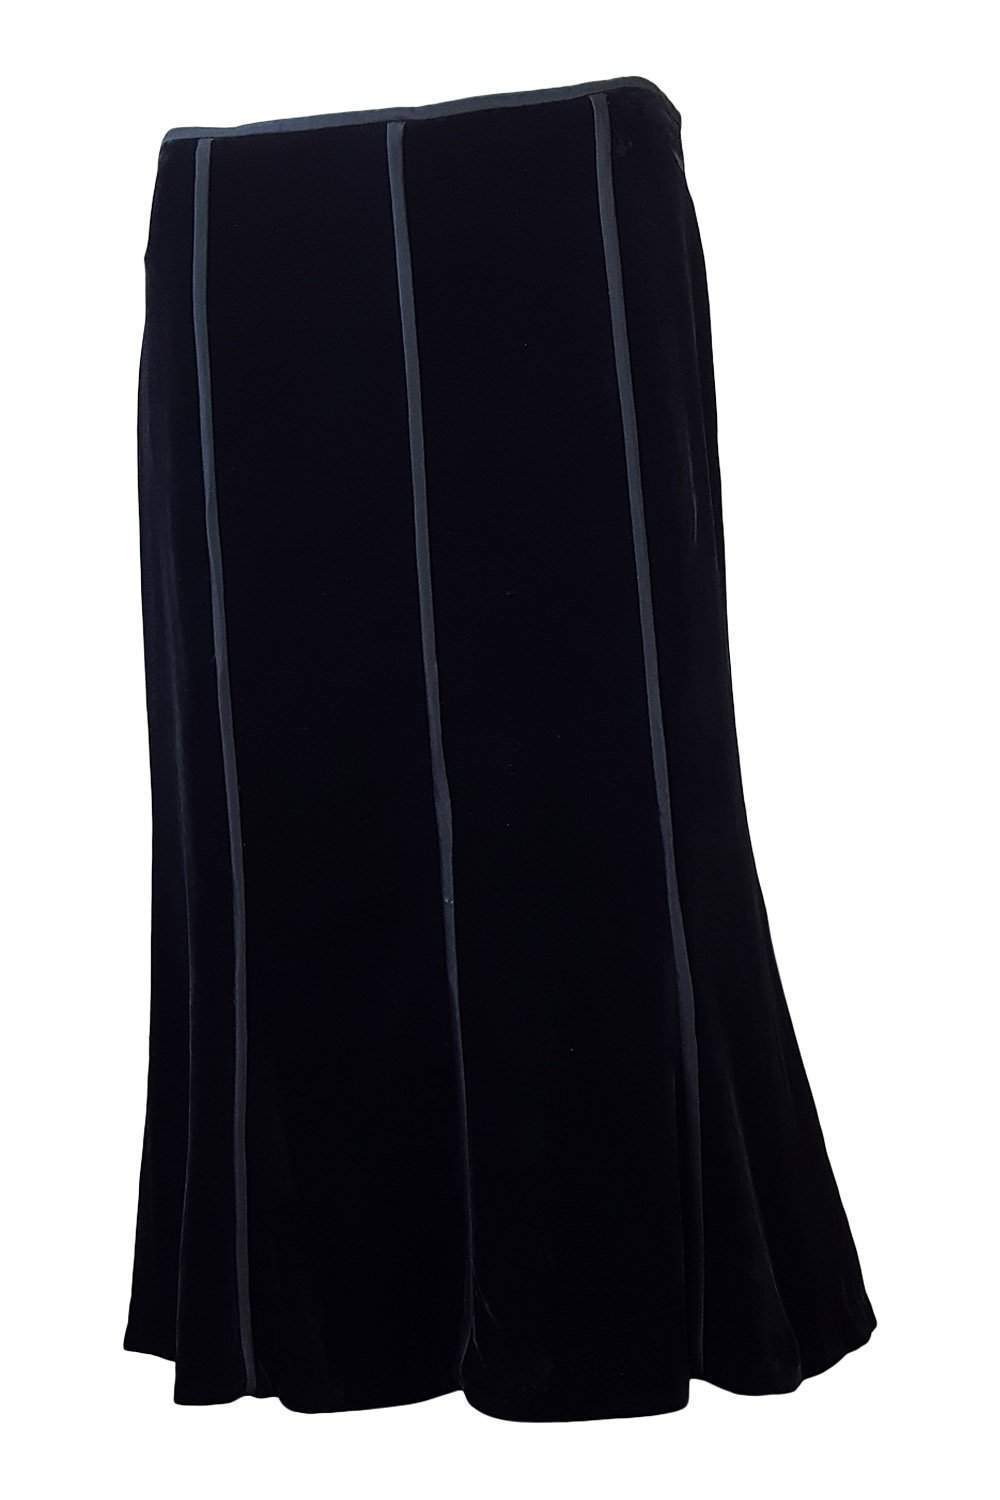 MAX MARA Black Velvet Silk Blend A Line Skirt (UK 10)-Max Mara-The Freperie